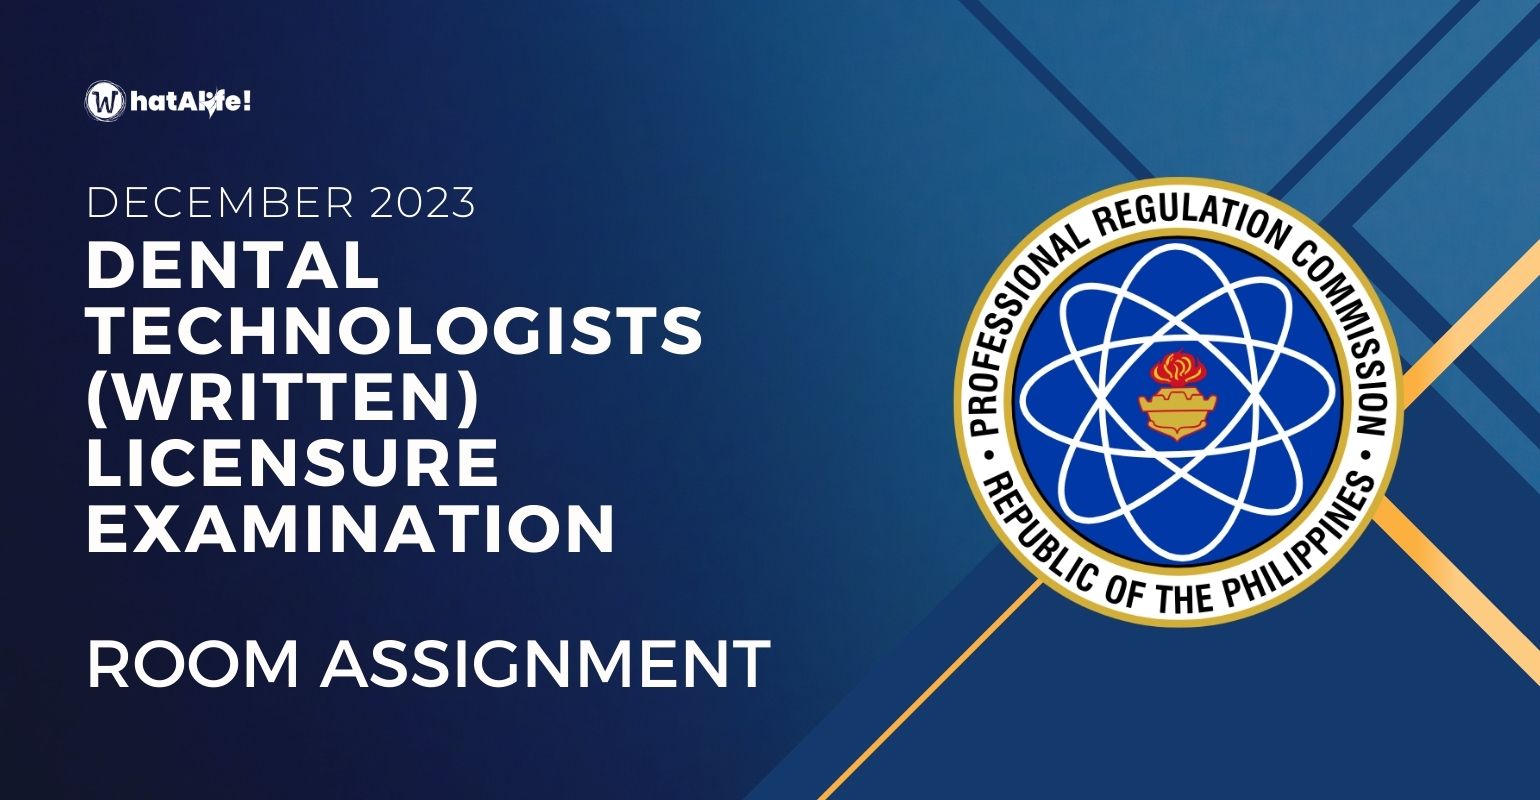 room assignment december 2023 dental technologists written licensure exam